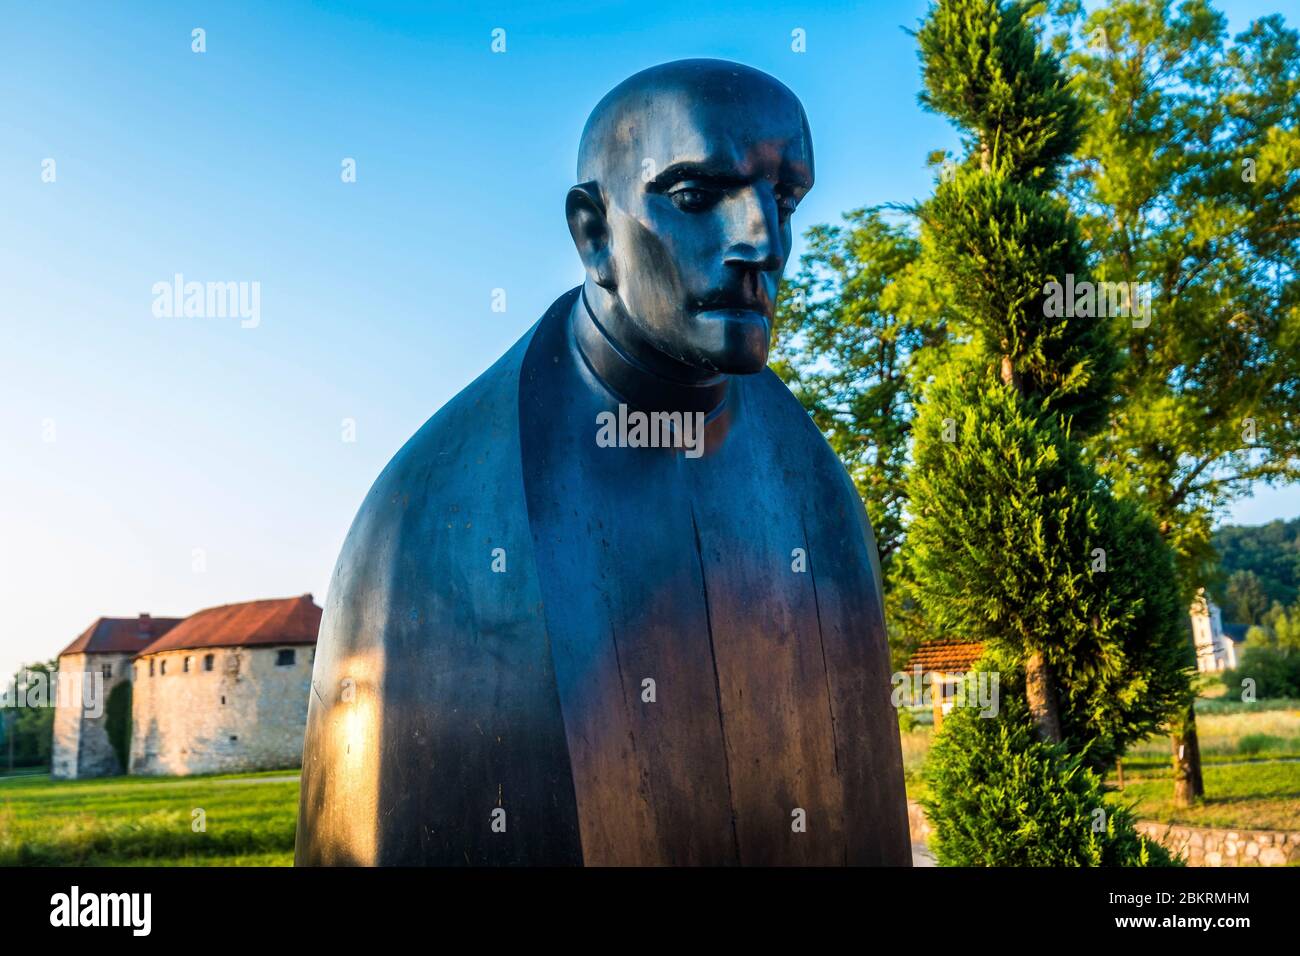 Kroatien, Karlovac County, Ribnik, Statue von Juraj Krizanic, erster Pan-slawischer Missionar, predigt die Annäherung der russisch-slawischen und orthodoxen Kirchen Stockfoto